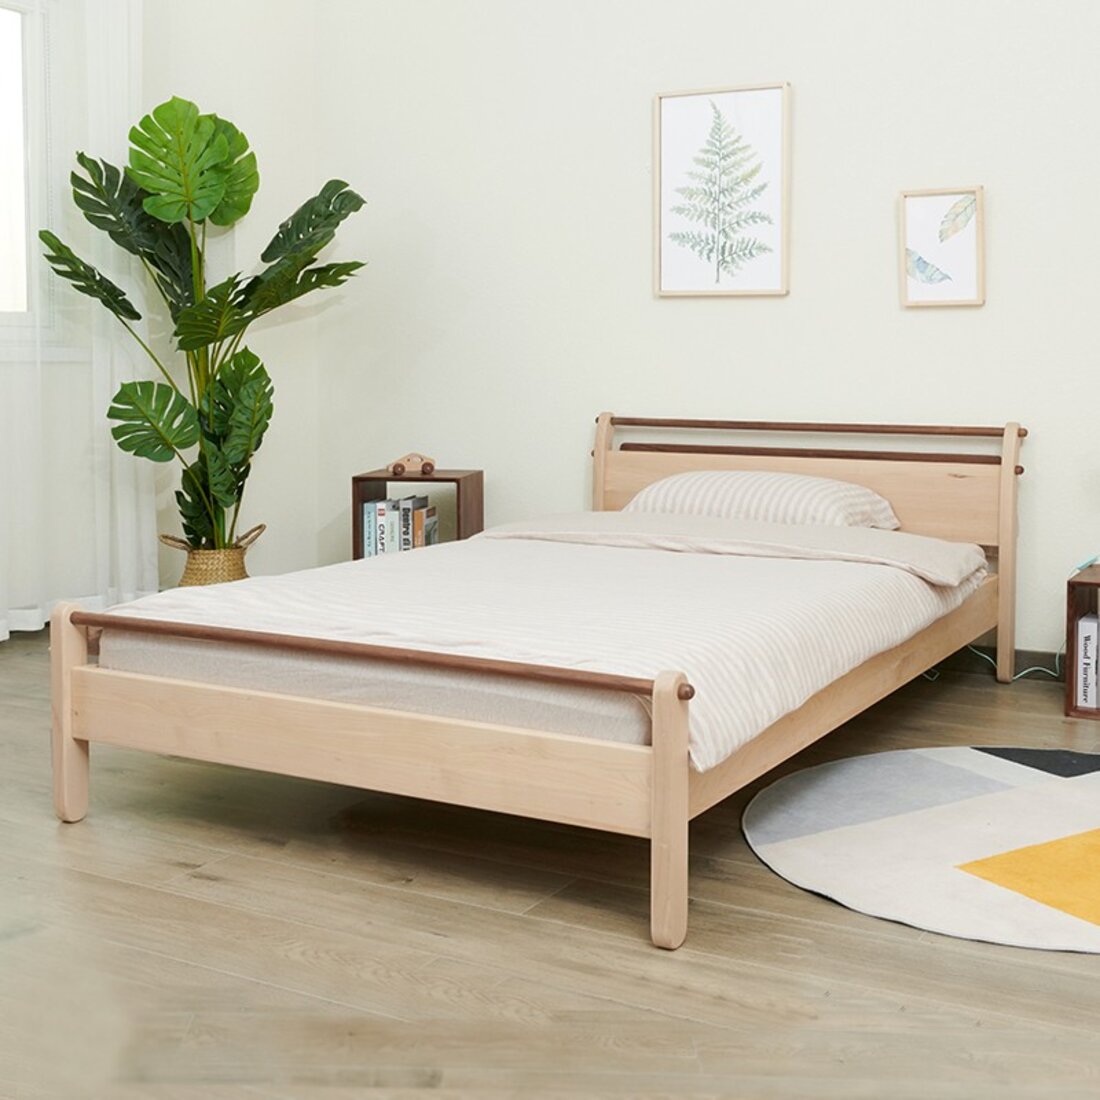 米儿童床小户型原创家具简约1.35米1.2上形孩在圆饼干床无床侧_上形 孩在_正800